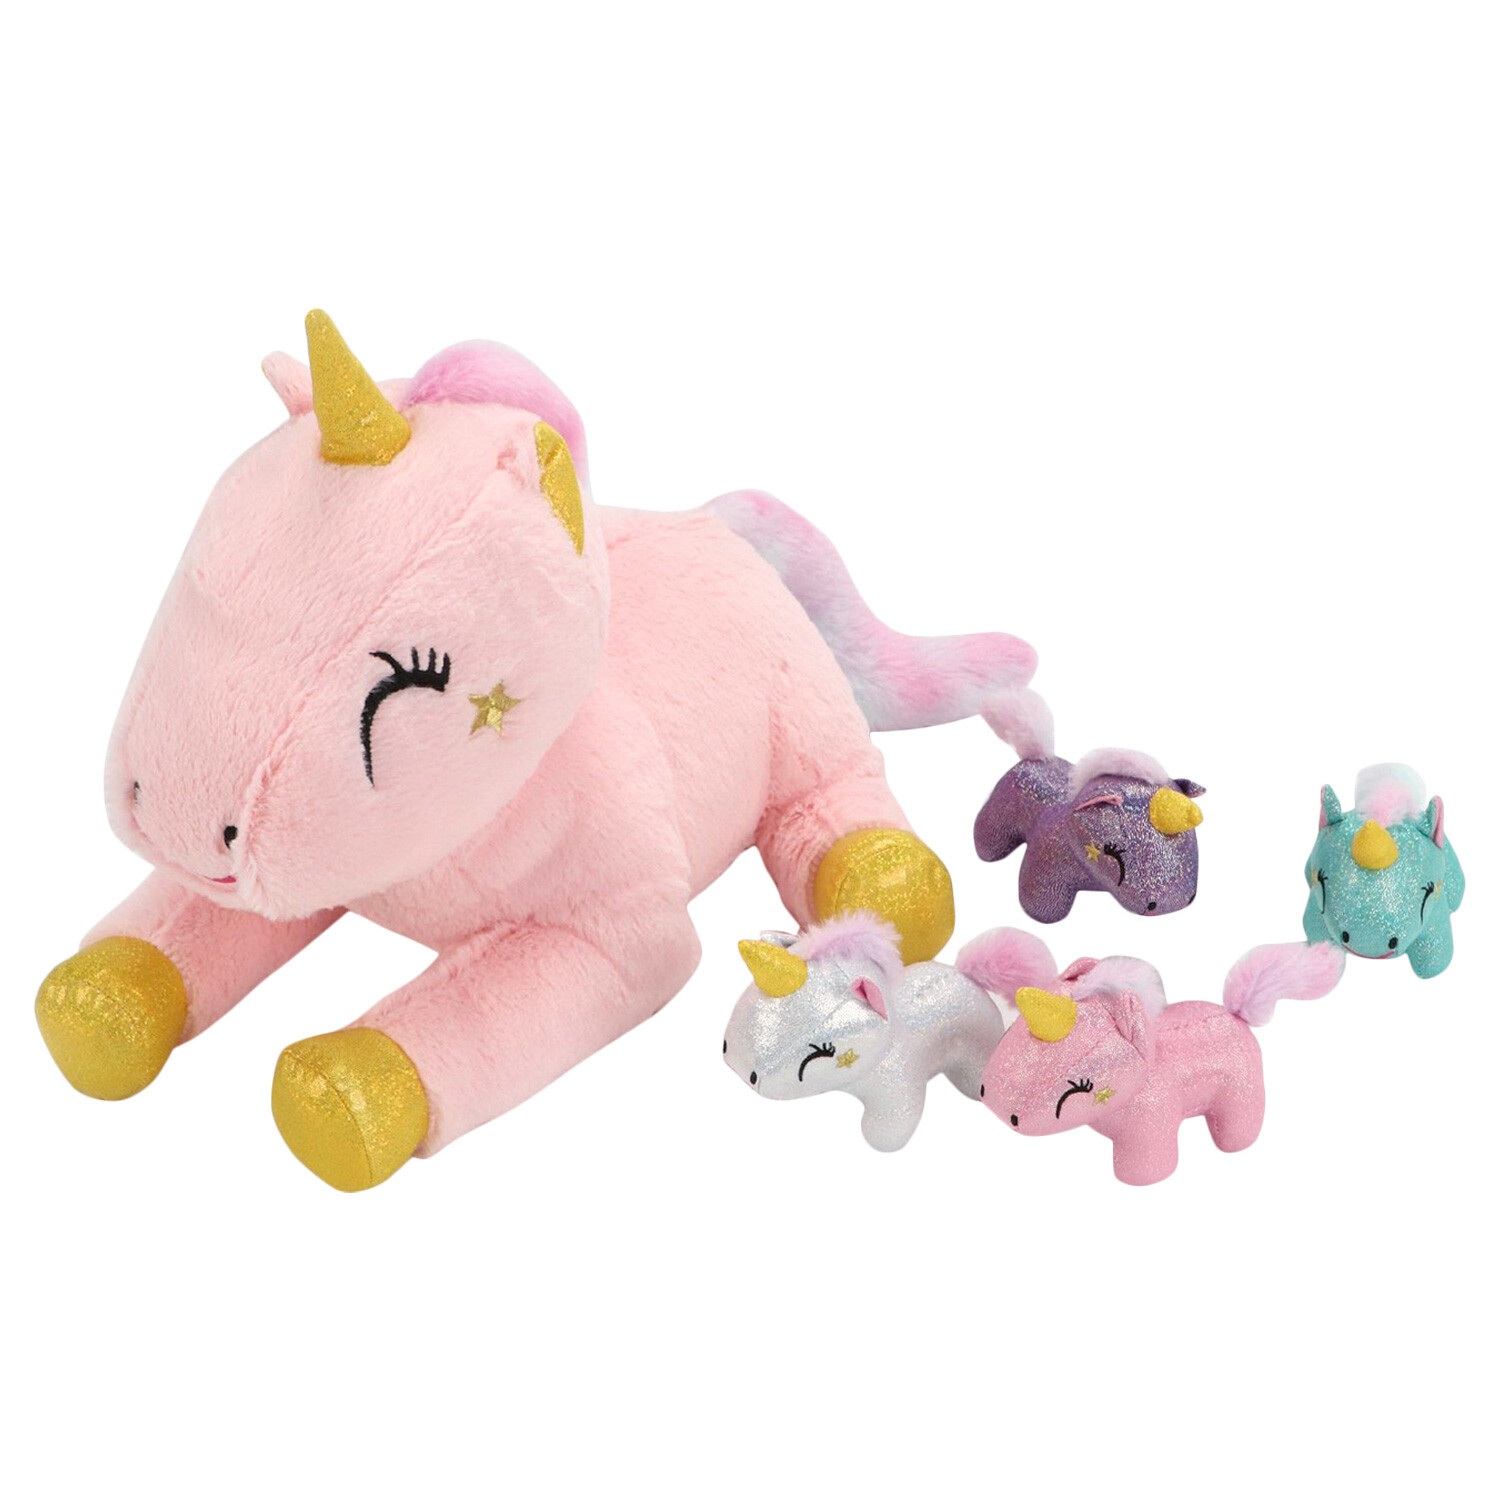 Unicorn Plush Toy Set - Pink Image